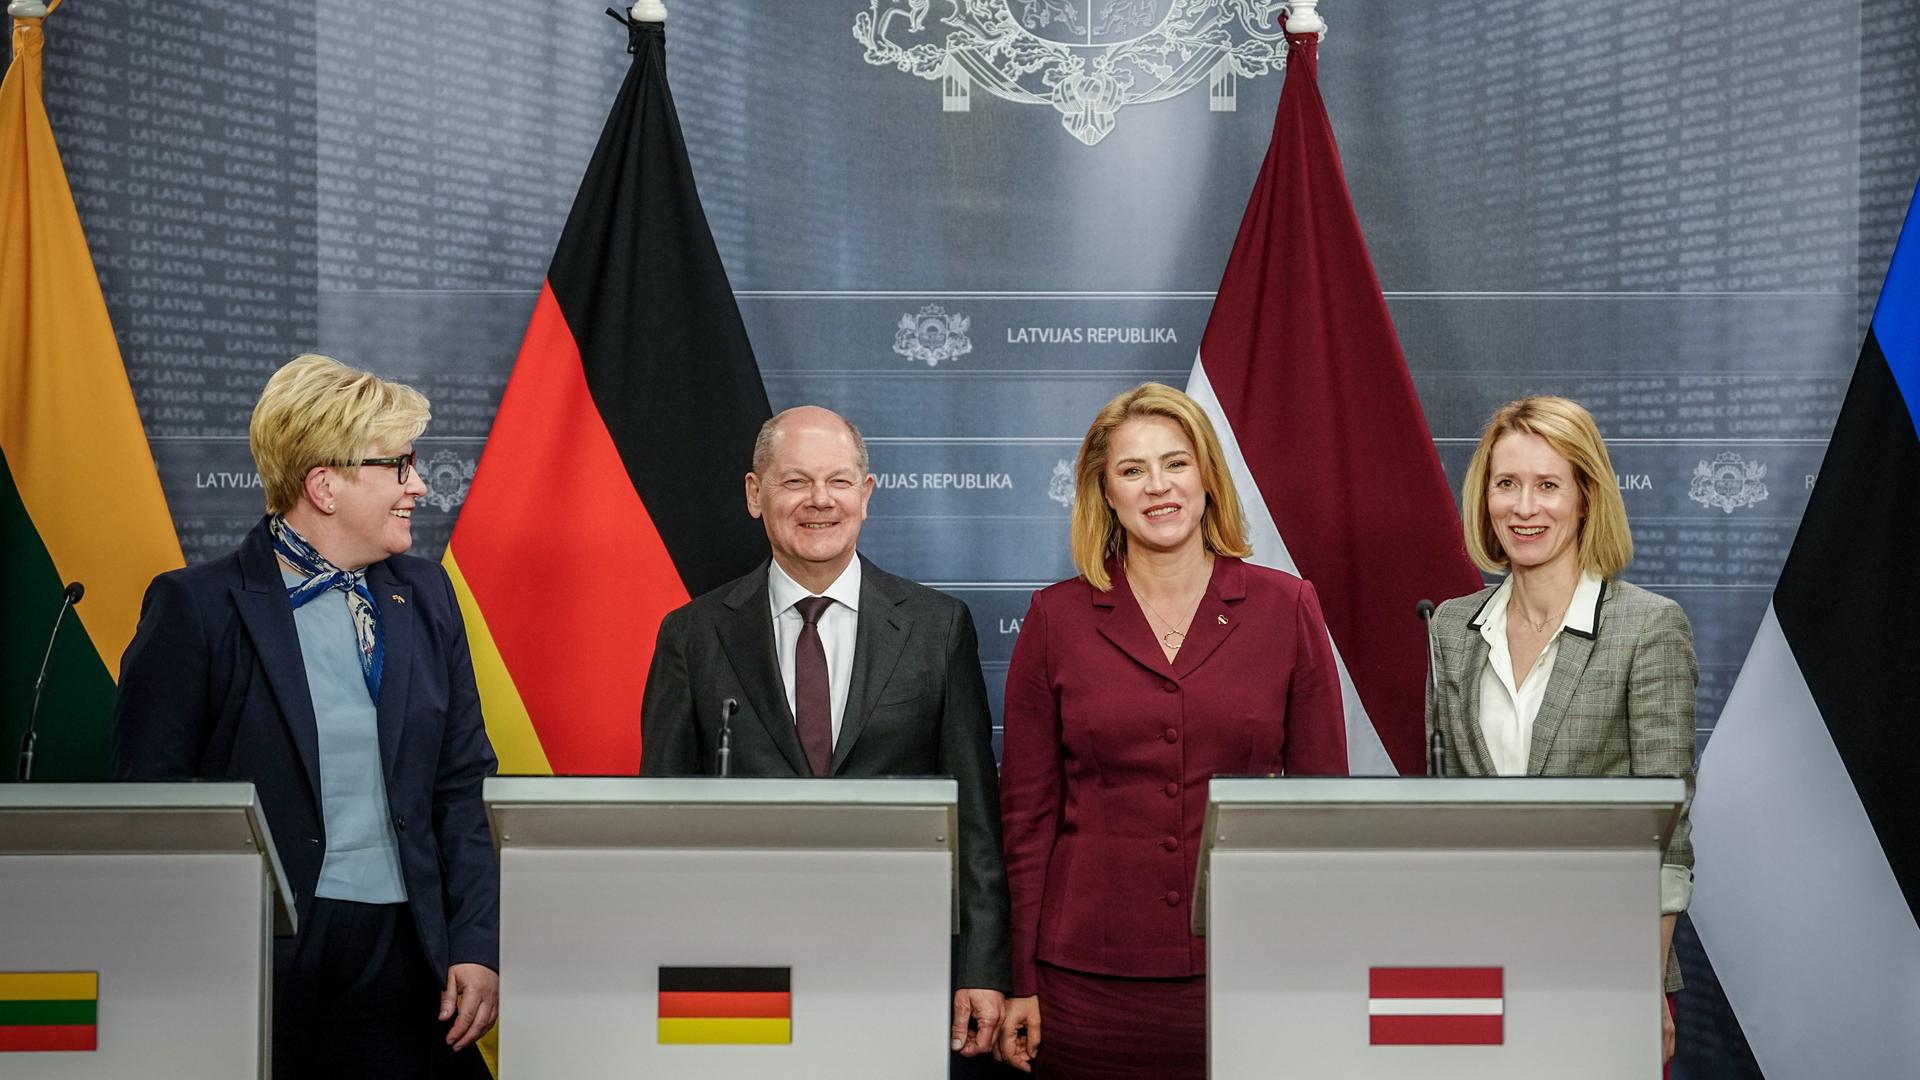 Bundeskanzler Olaf Scholz (2.v.l) gibt zusammen mit Ingrida Simonyte (l-r), Ministerpräsidentin von Litauen, Evika Silina, Ministerpräsidentin von Lettland, und Kaja Kallas, Ministerpräsidentin von Estland, eine Pressekonferenz.